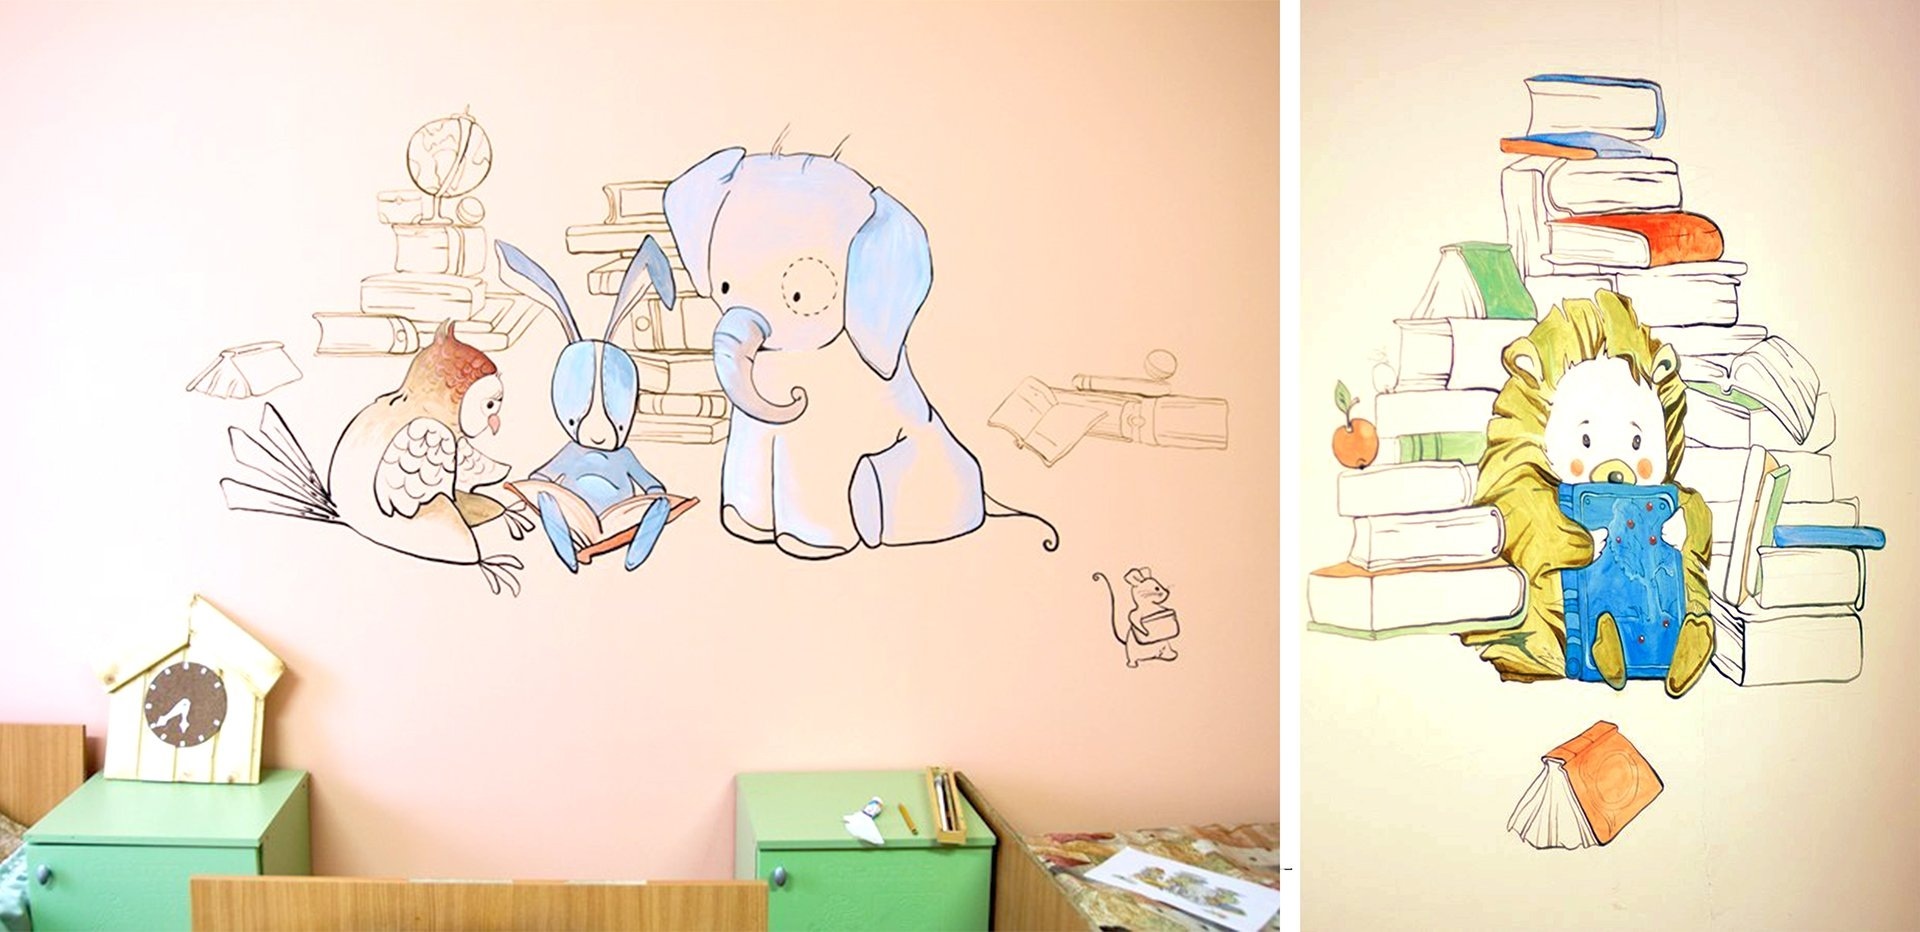 Рисунки для срисовки лёгкие на стену в комнату